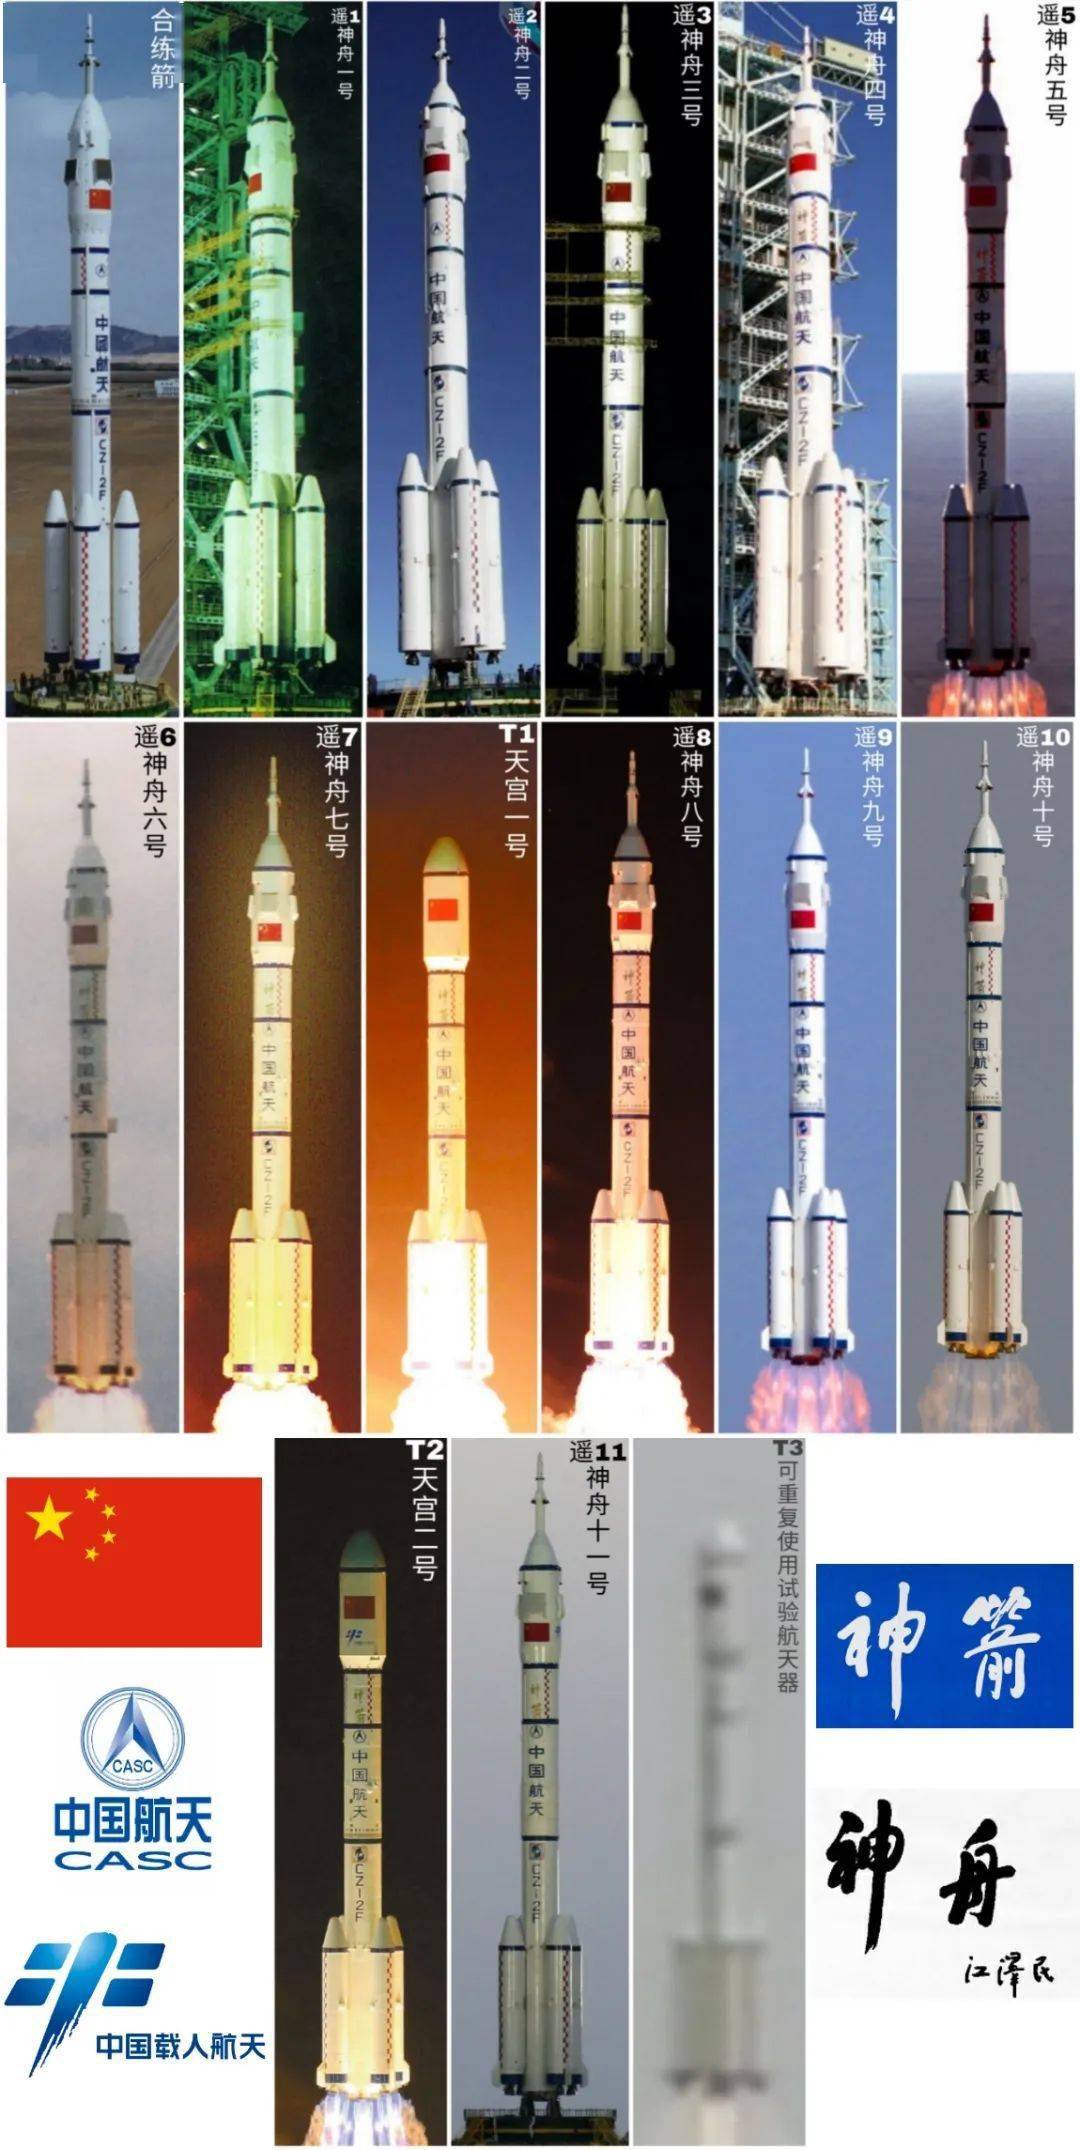 别称"神箭",缩写cz-2f或lm-2f)是由中国运载火箭技术研究院研制,在